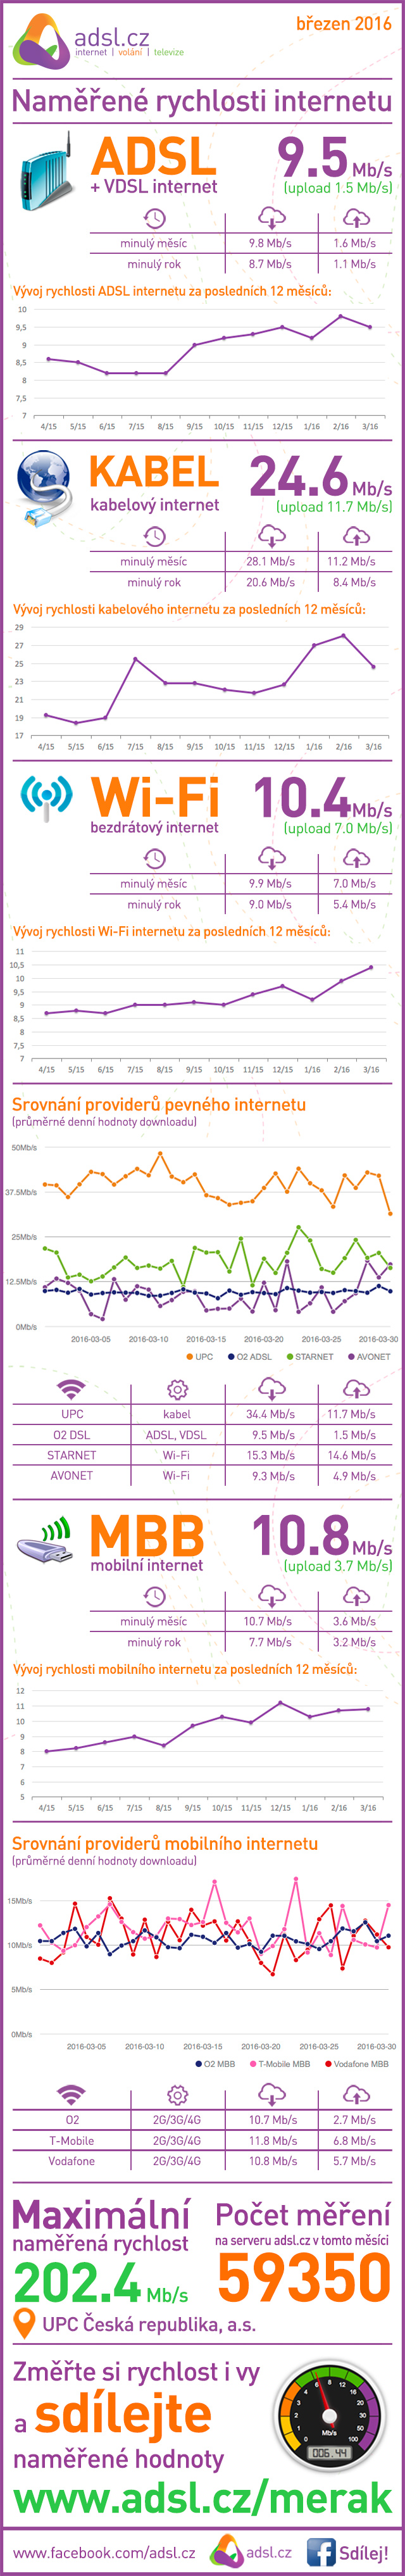 Rychlost internetu v březnu 2016 podle ADSl.cz